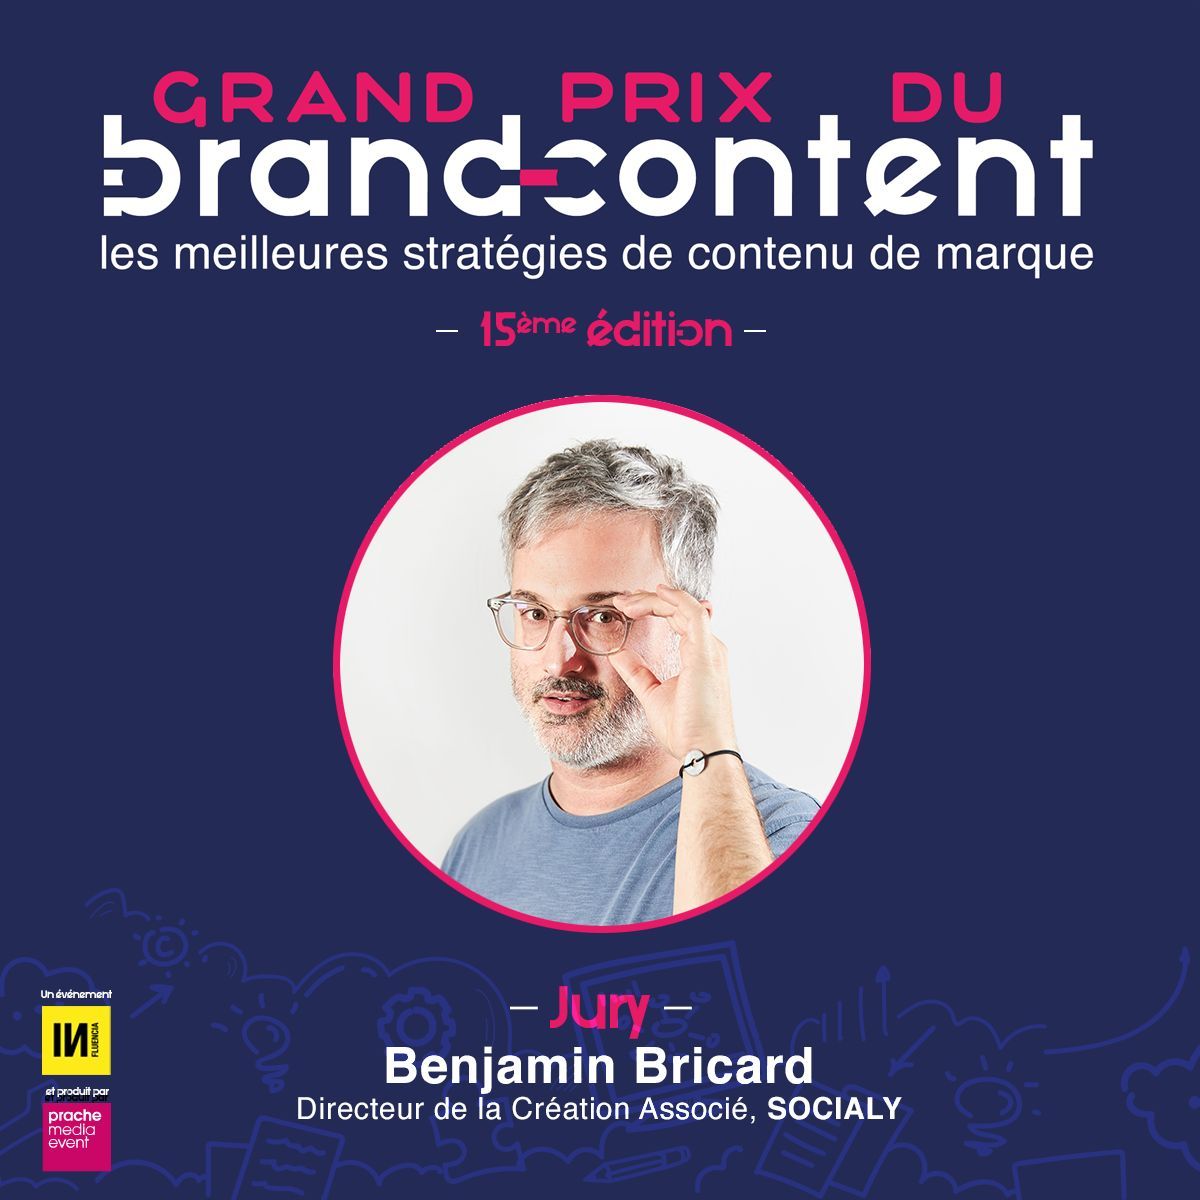 Dernier jour pour candidatez au #GPBrandContent24 ! 🔵 Benjamin Bricard, Directeur de la Création Associé chez Socialy fait partie du jury ! Candidatez ici jusqu'à 23:59 : grandprixdubrandcontent.com/candidature/